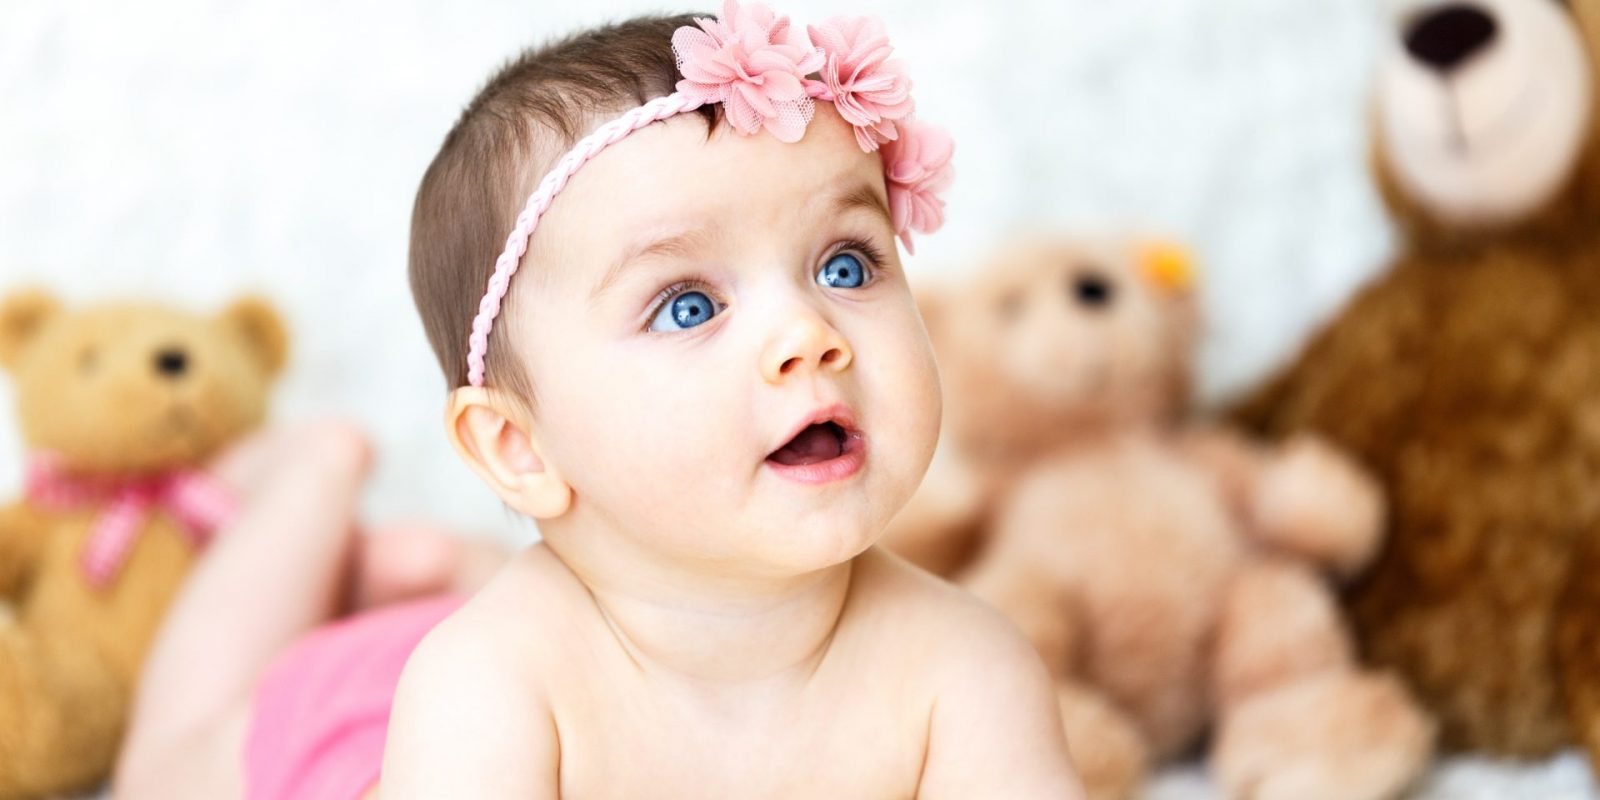 Beliebte Babynamen für Mädchen – Top 10 der schönsten Mädchennamen